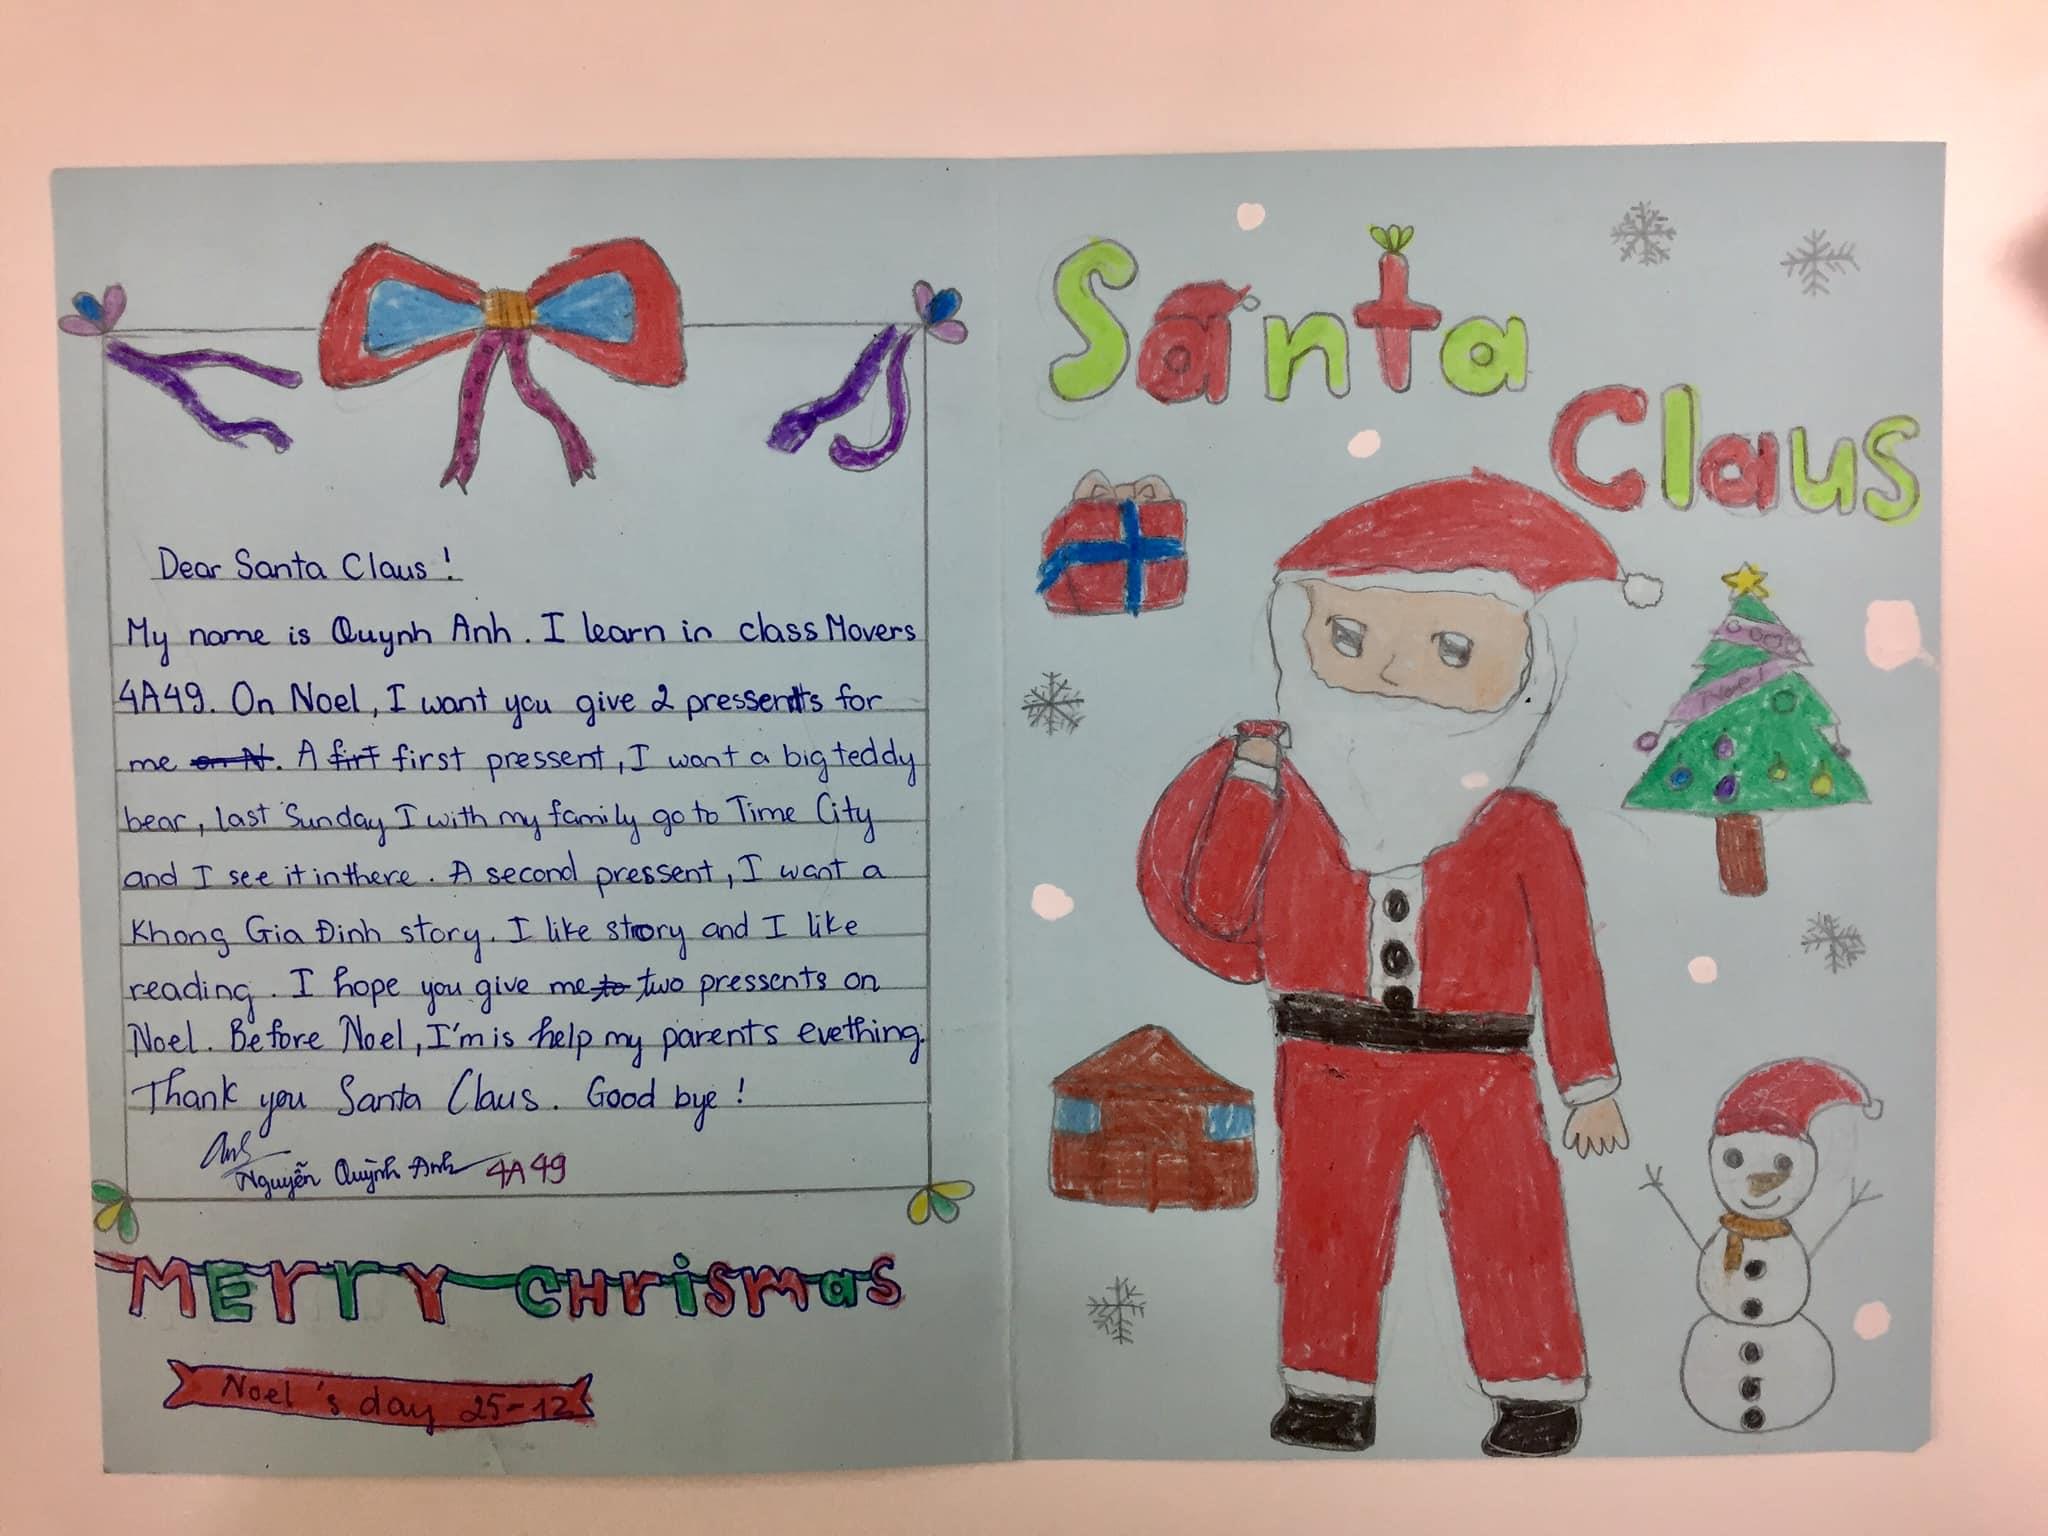 Letter for Santa